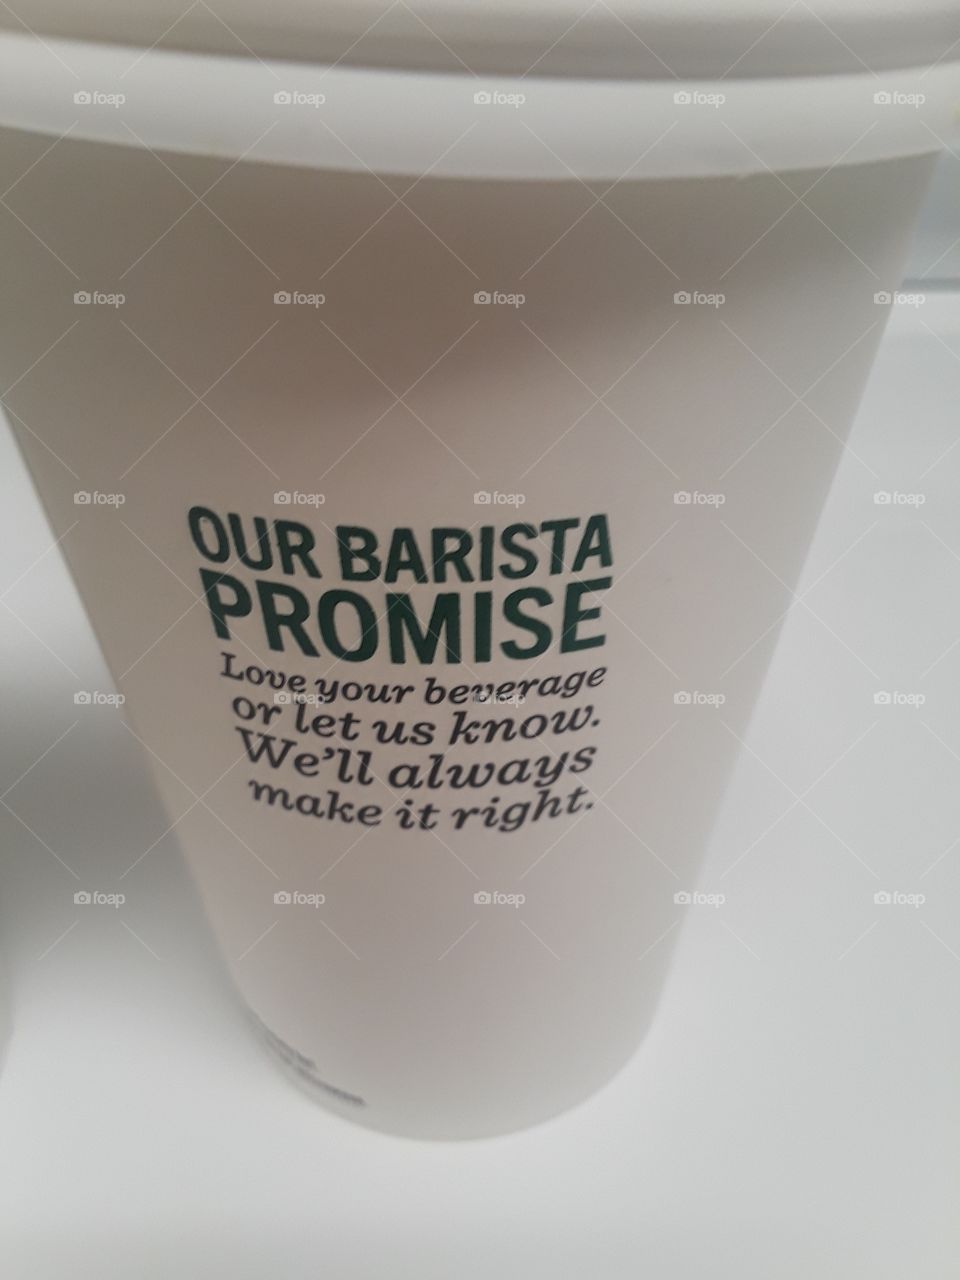 Starbucks Barista Promise On Starbucks Cup , motto,logo,promise